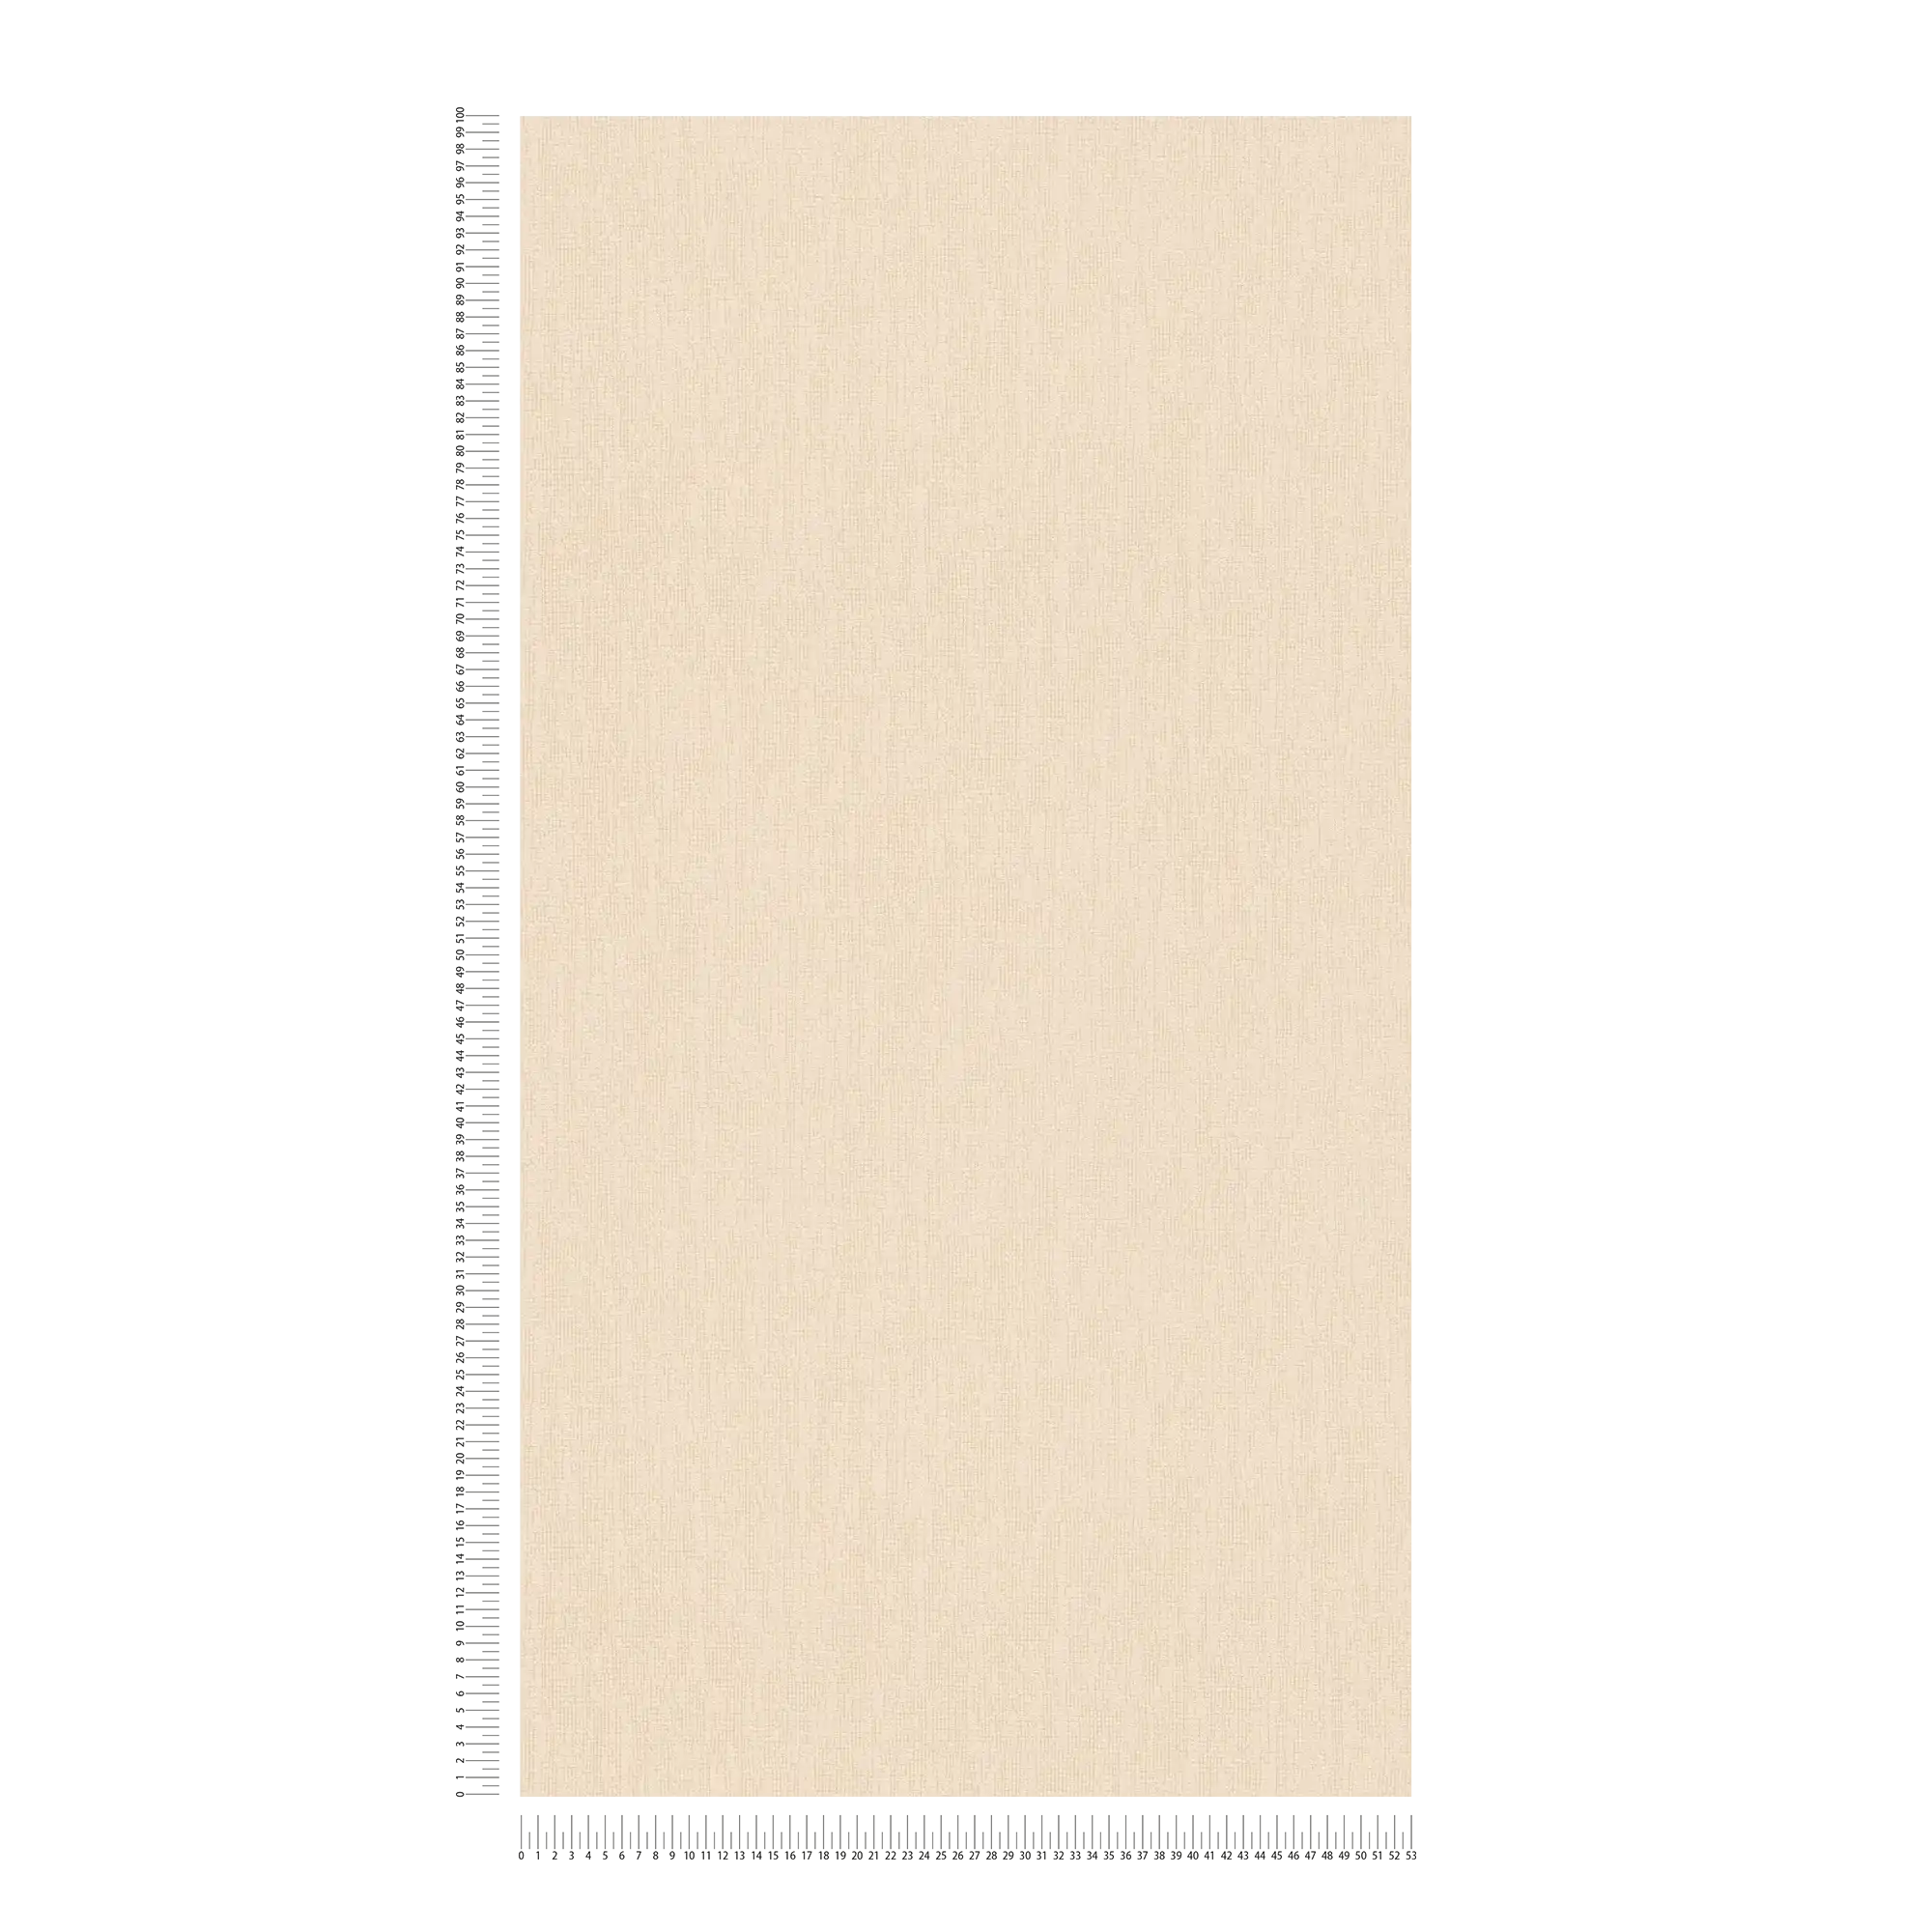             Papier peint beige uni avec détails structurés dans le style Scandi
        